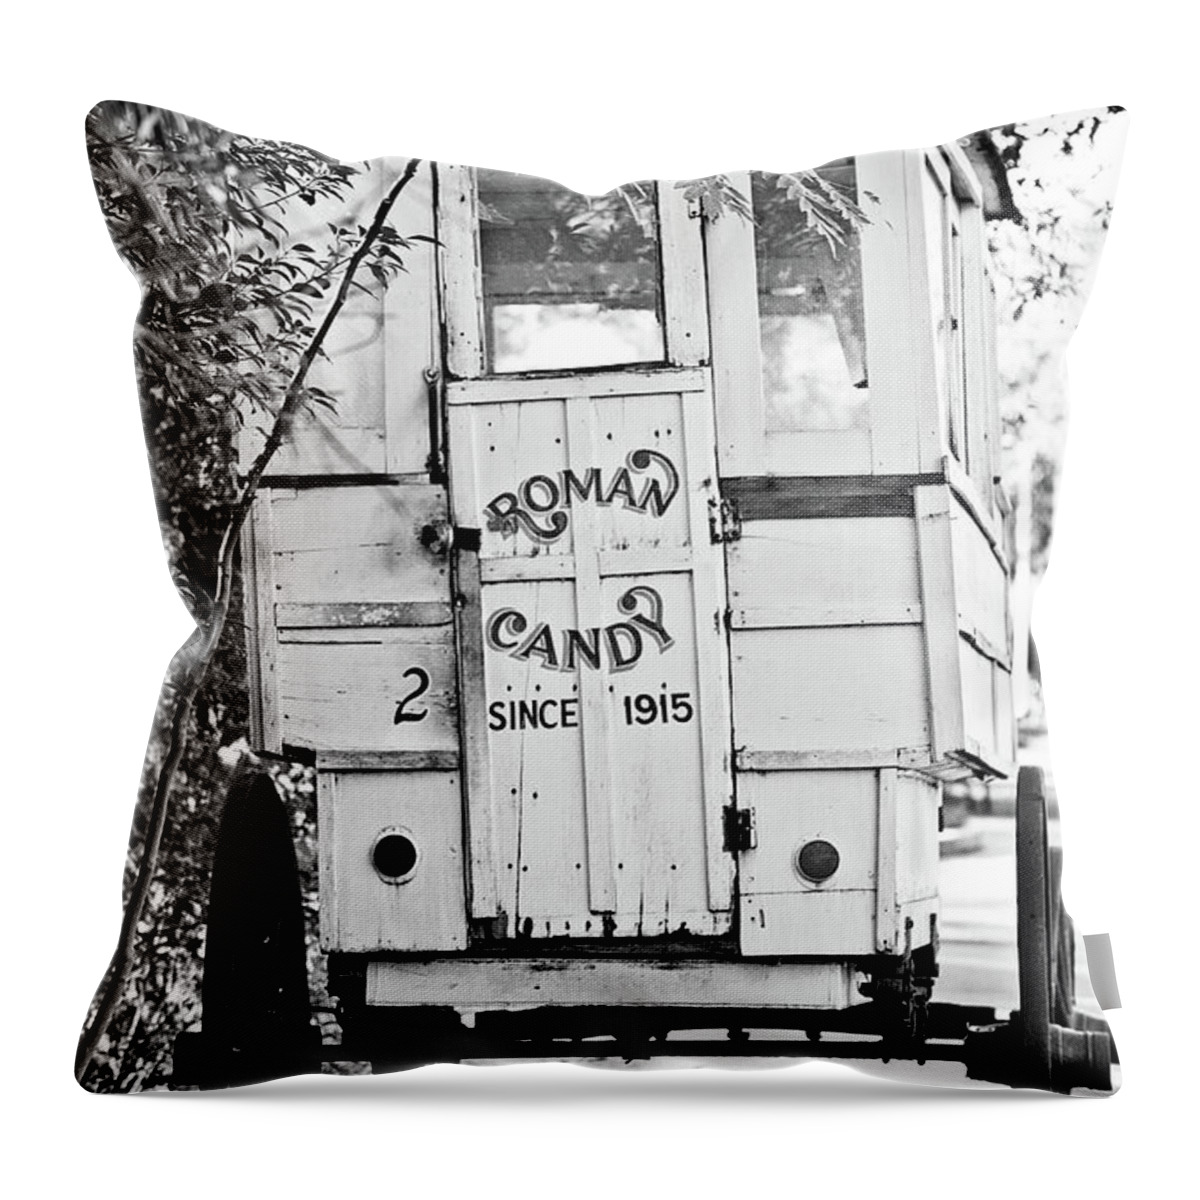 Roman Candy Throw Pillow featuring the photograph Roman Candy Cart - BW by Scott Pellegrin